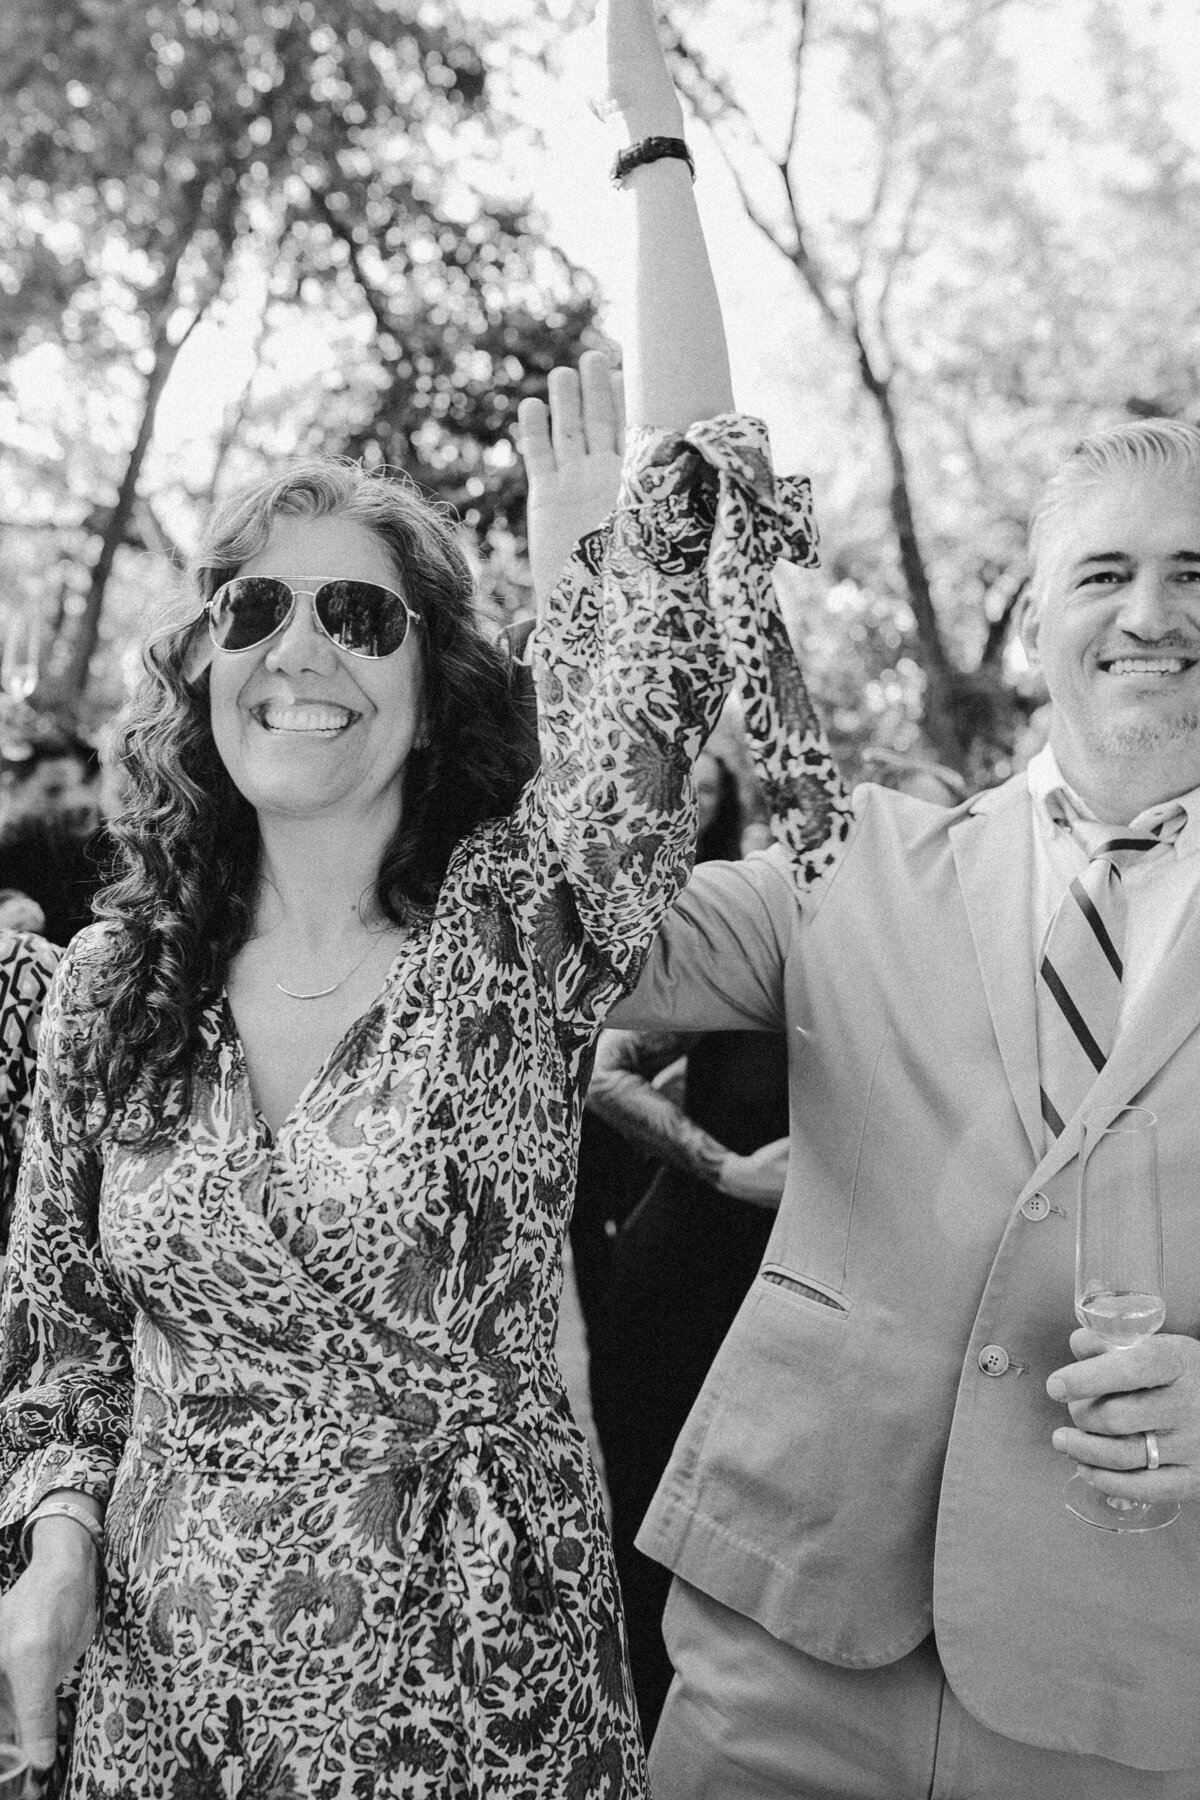 Wedding guests at outdoor wedding ceremony at Umlauf Sculpture Garden, Austin